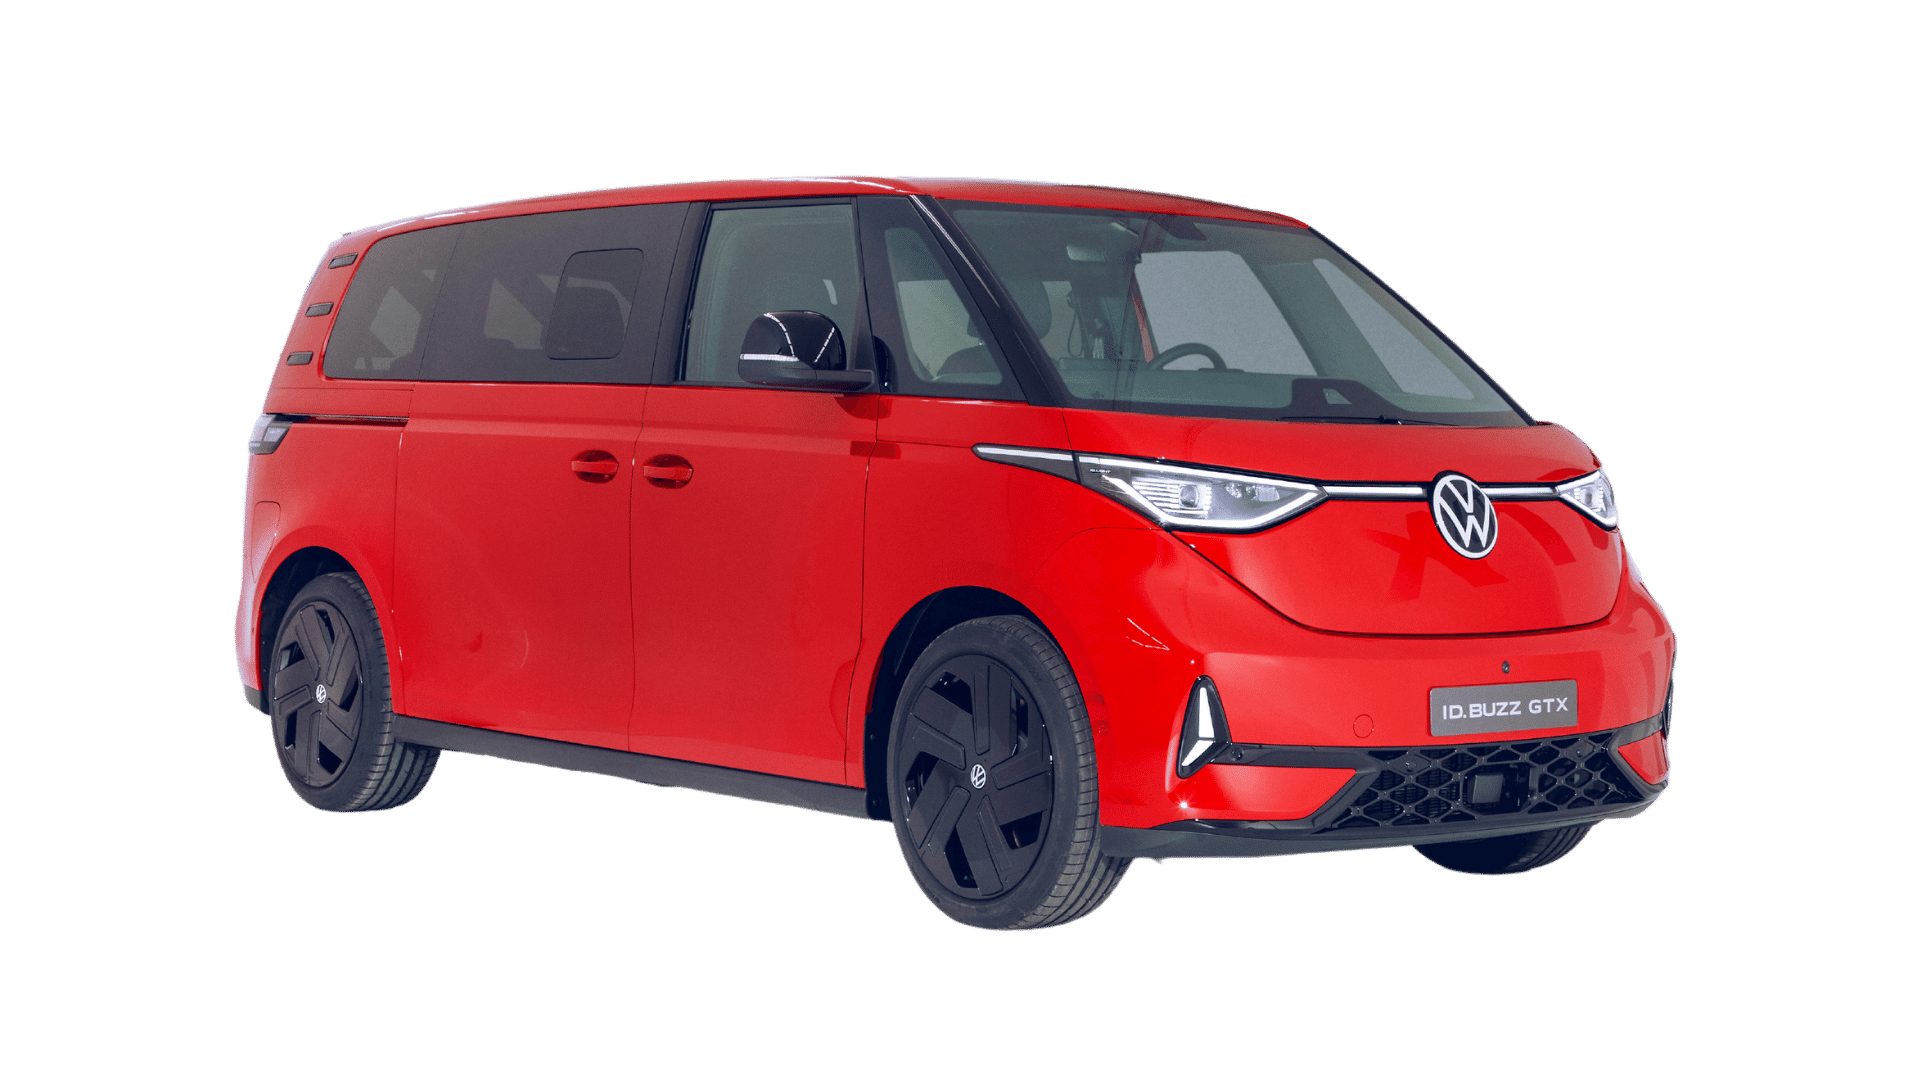 Charging your Volkswagen ID Buzz GTX